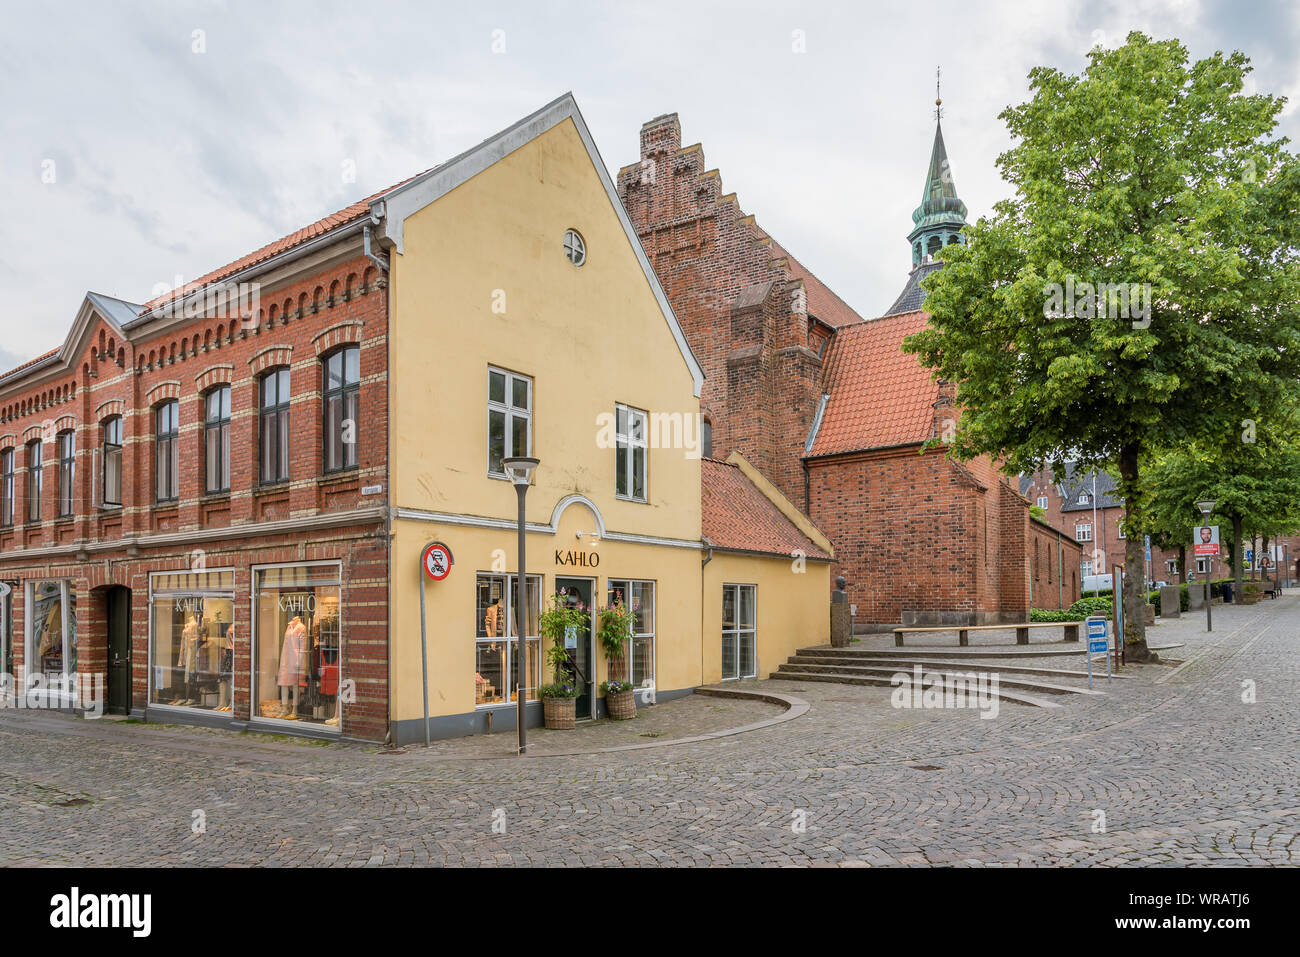 Un antica casa gialla in una piazza nei vecchi quartieri di Svendborg, Danimarca, luglio 10, 2019 Foto Stock